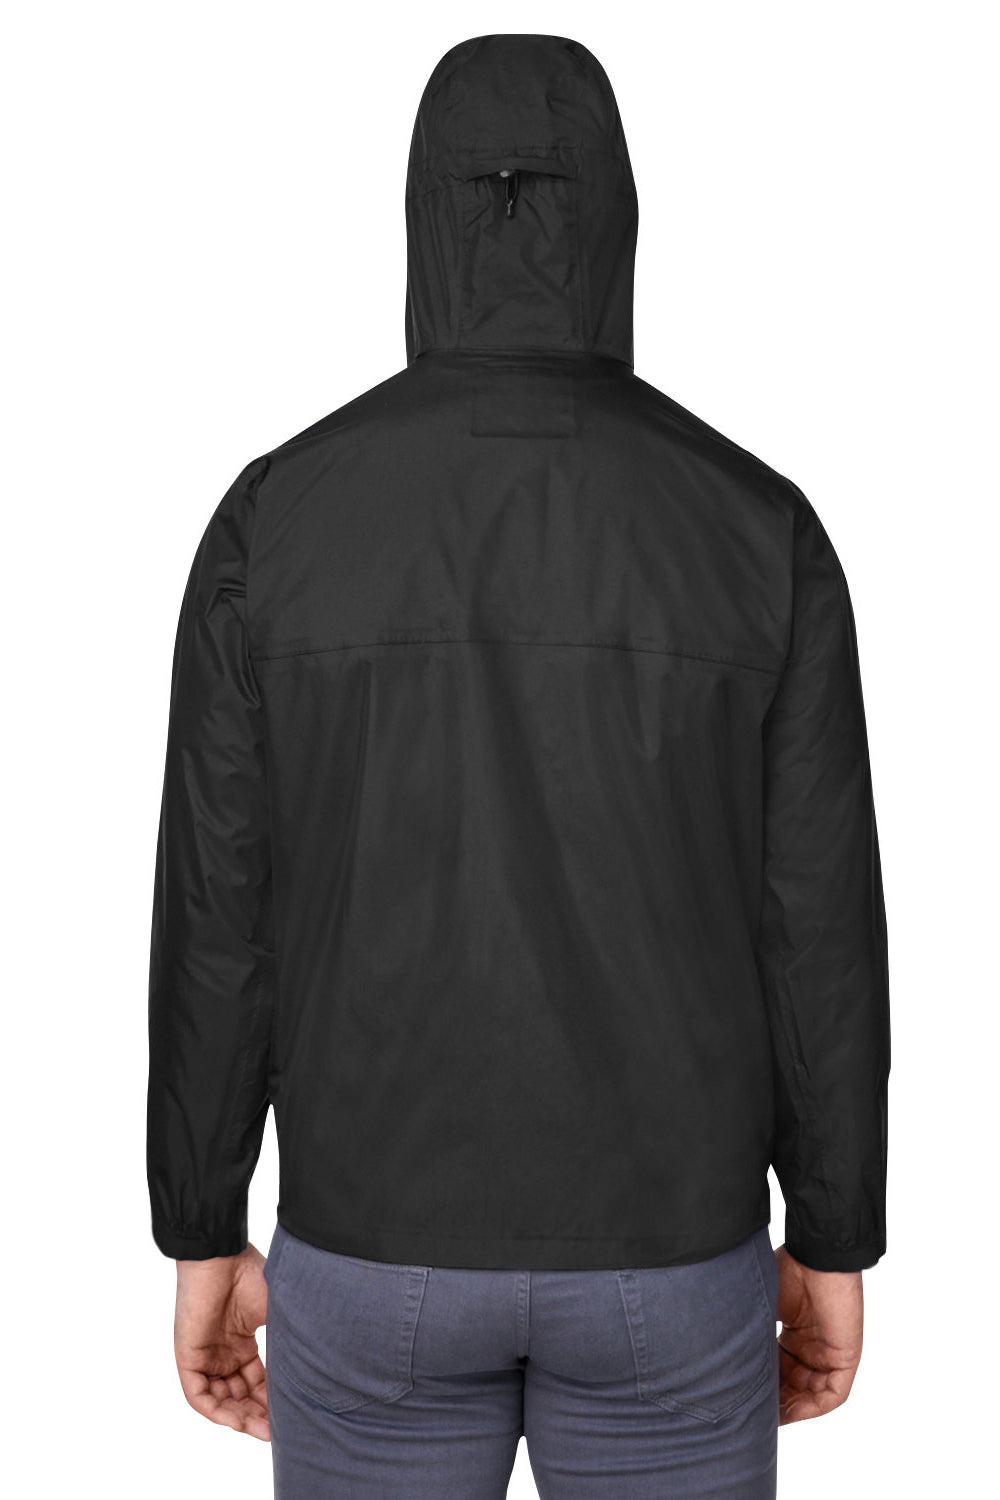 Under Armour 1374644 Mens Stormproof Cloudstrike 2.0 Waterproof Full Zip Hooded Jacket Black Model Back